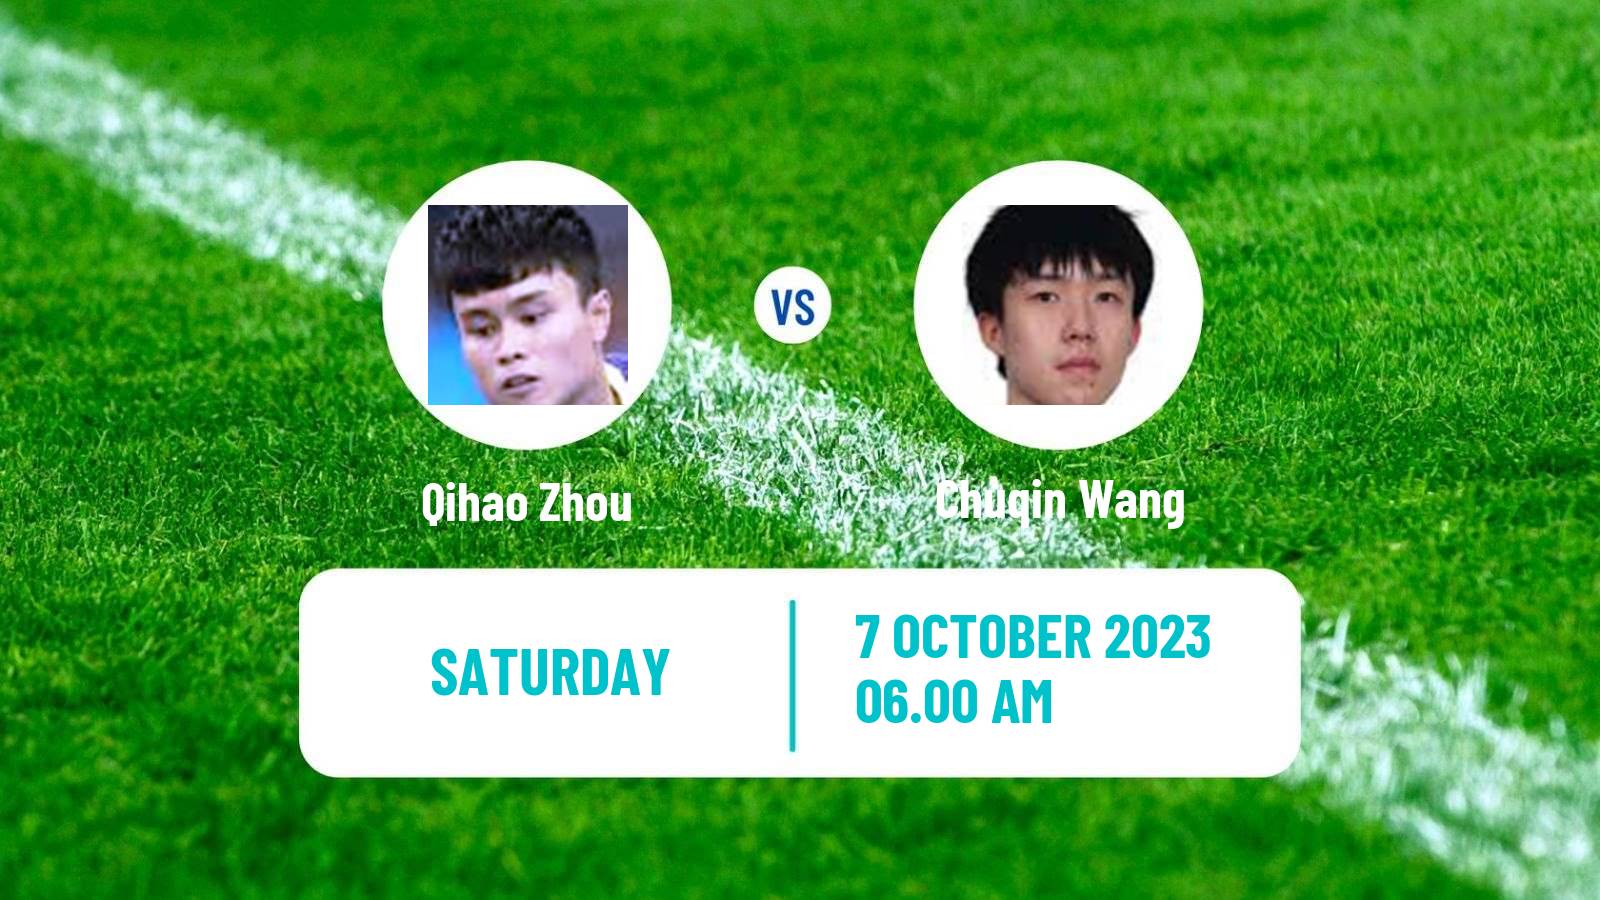 Table tennis Wtt Star Contender Lanzhou Men Qihao Zhou - Chuqin Wang